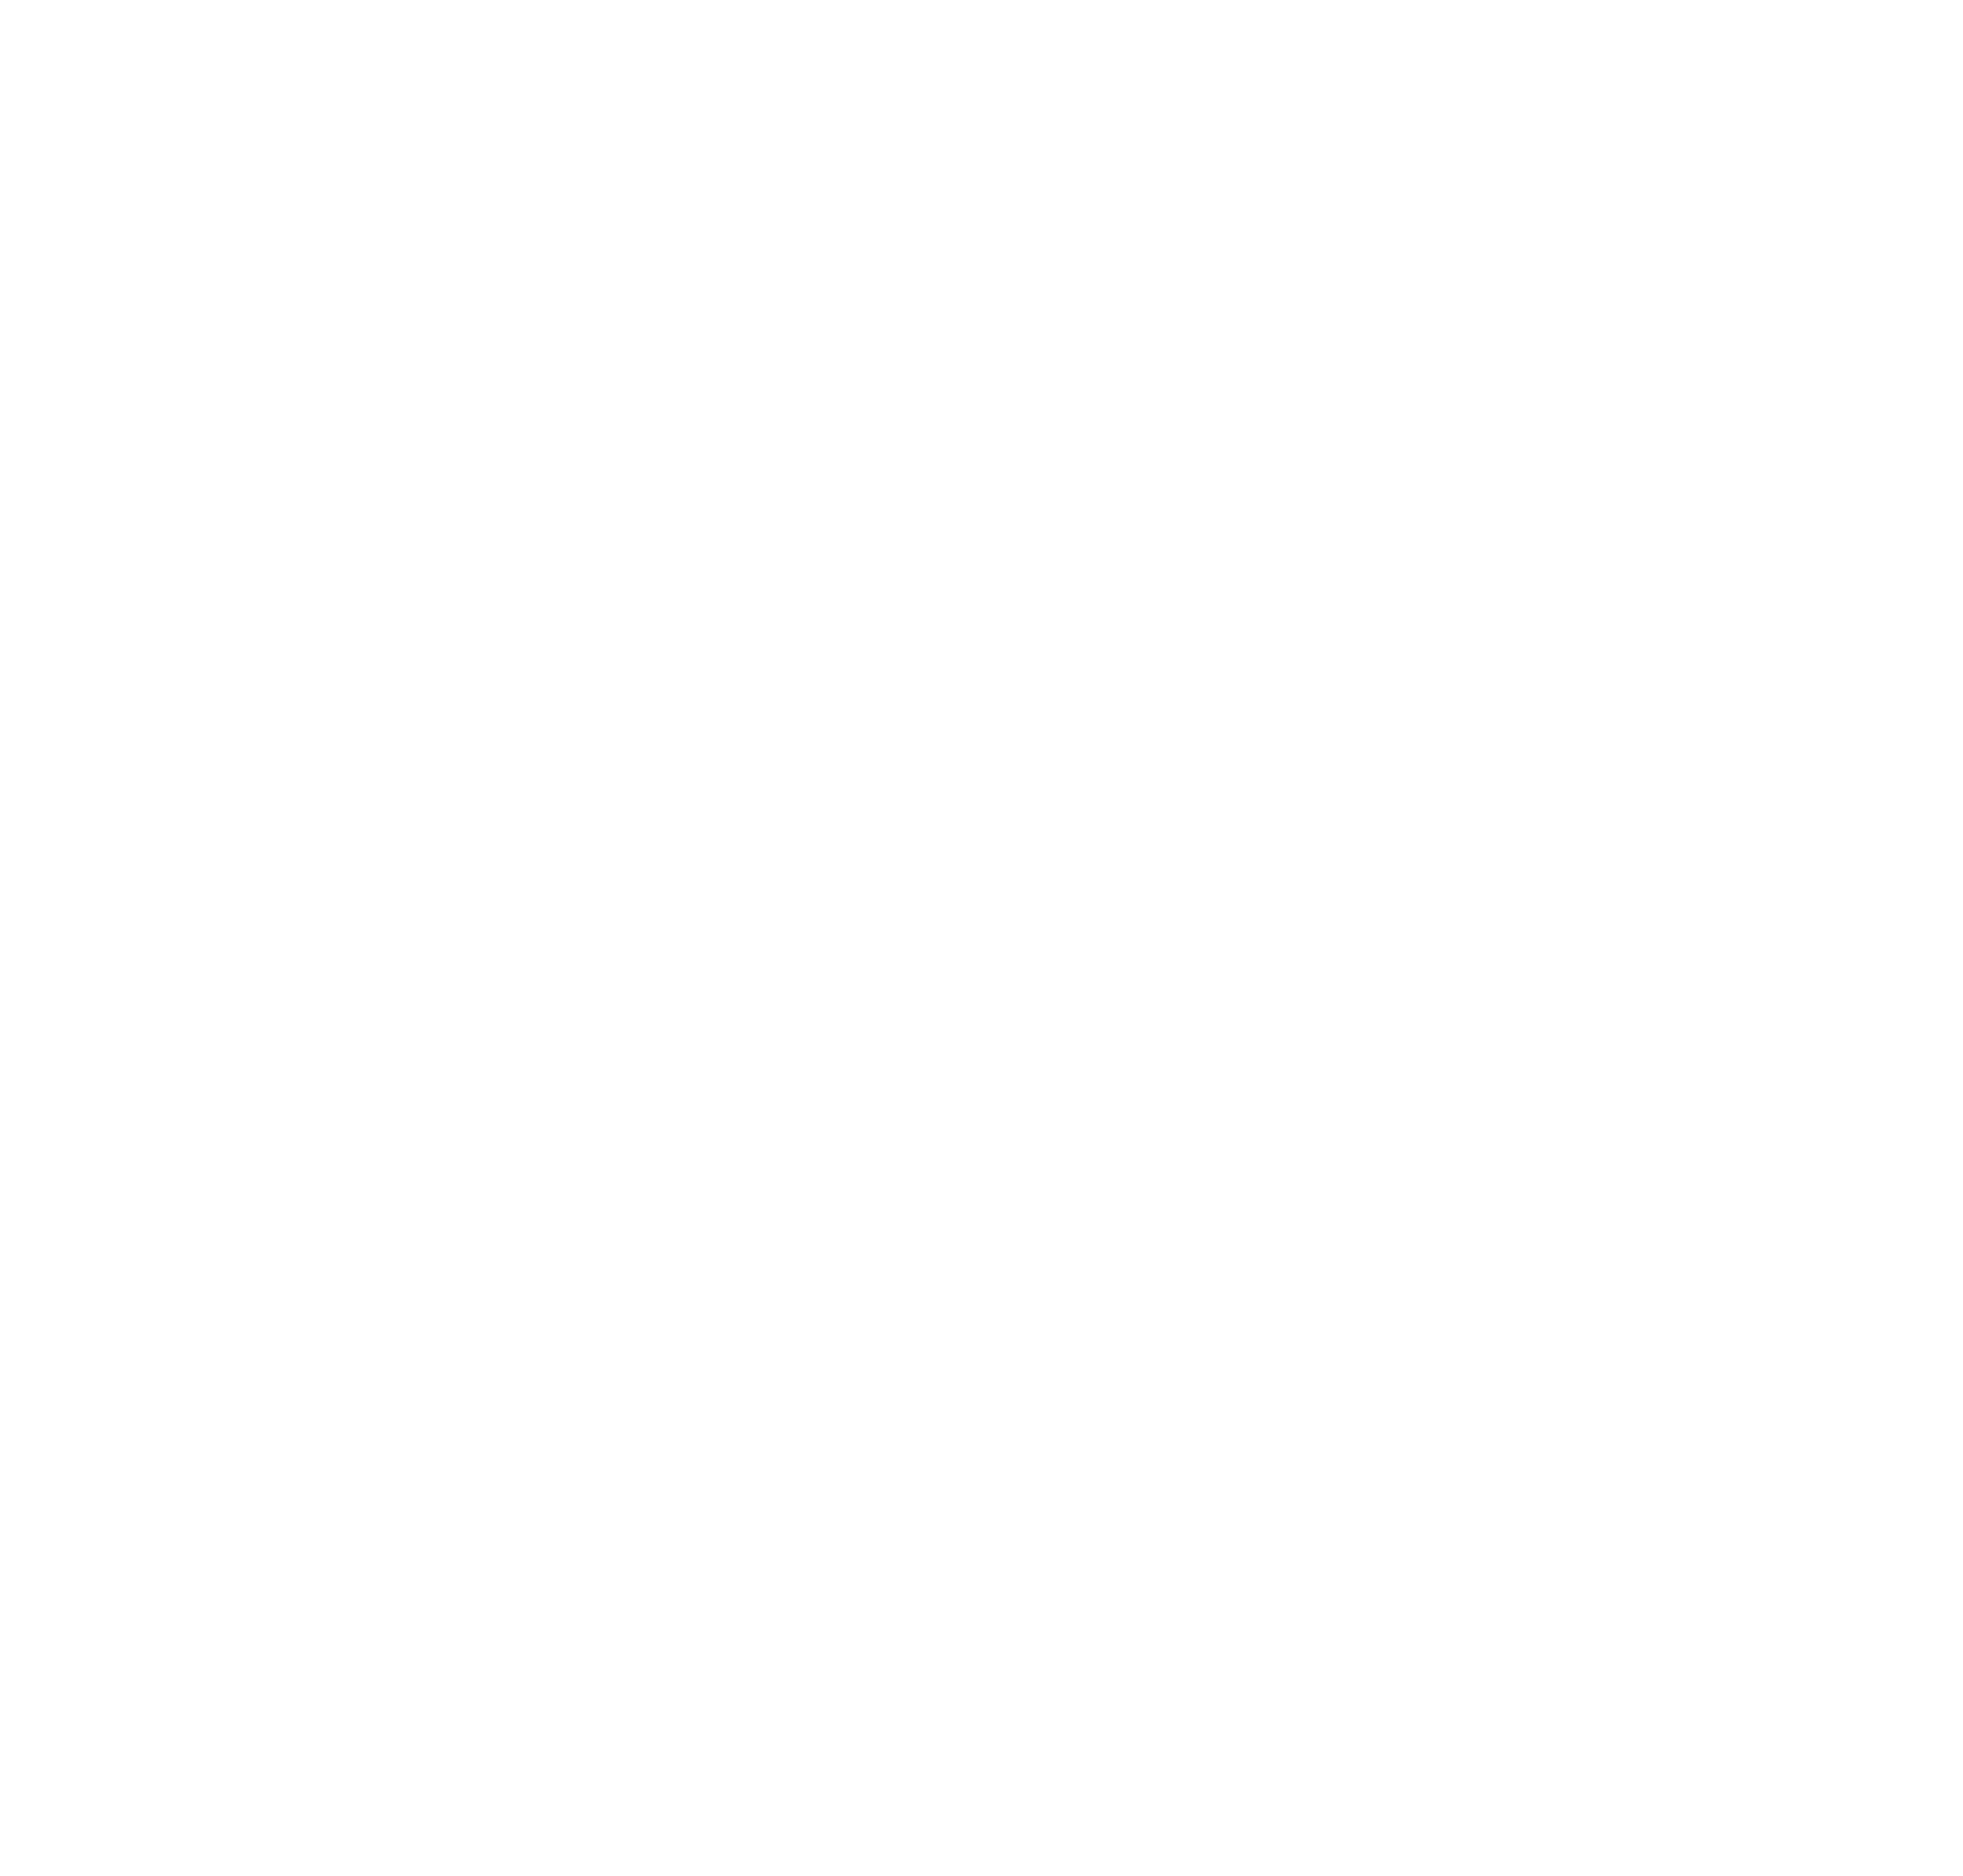 Community Conscious Consulting